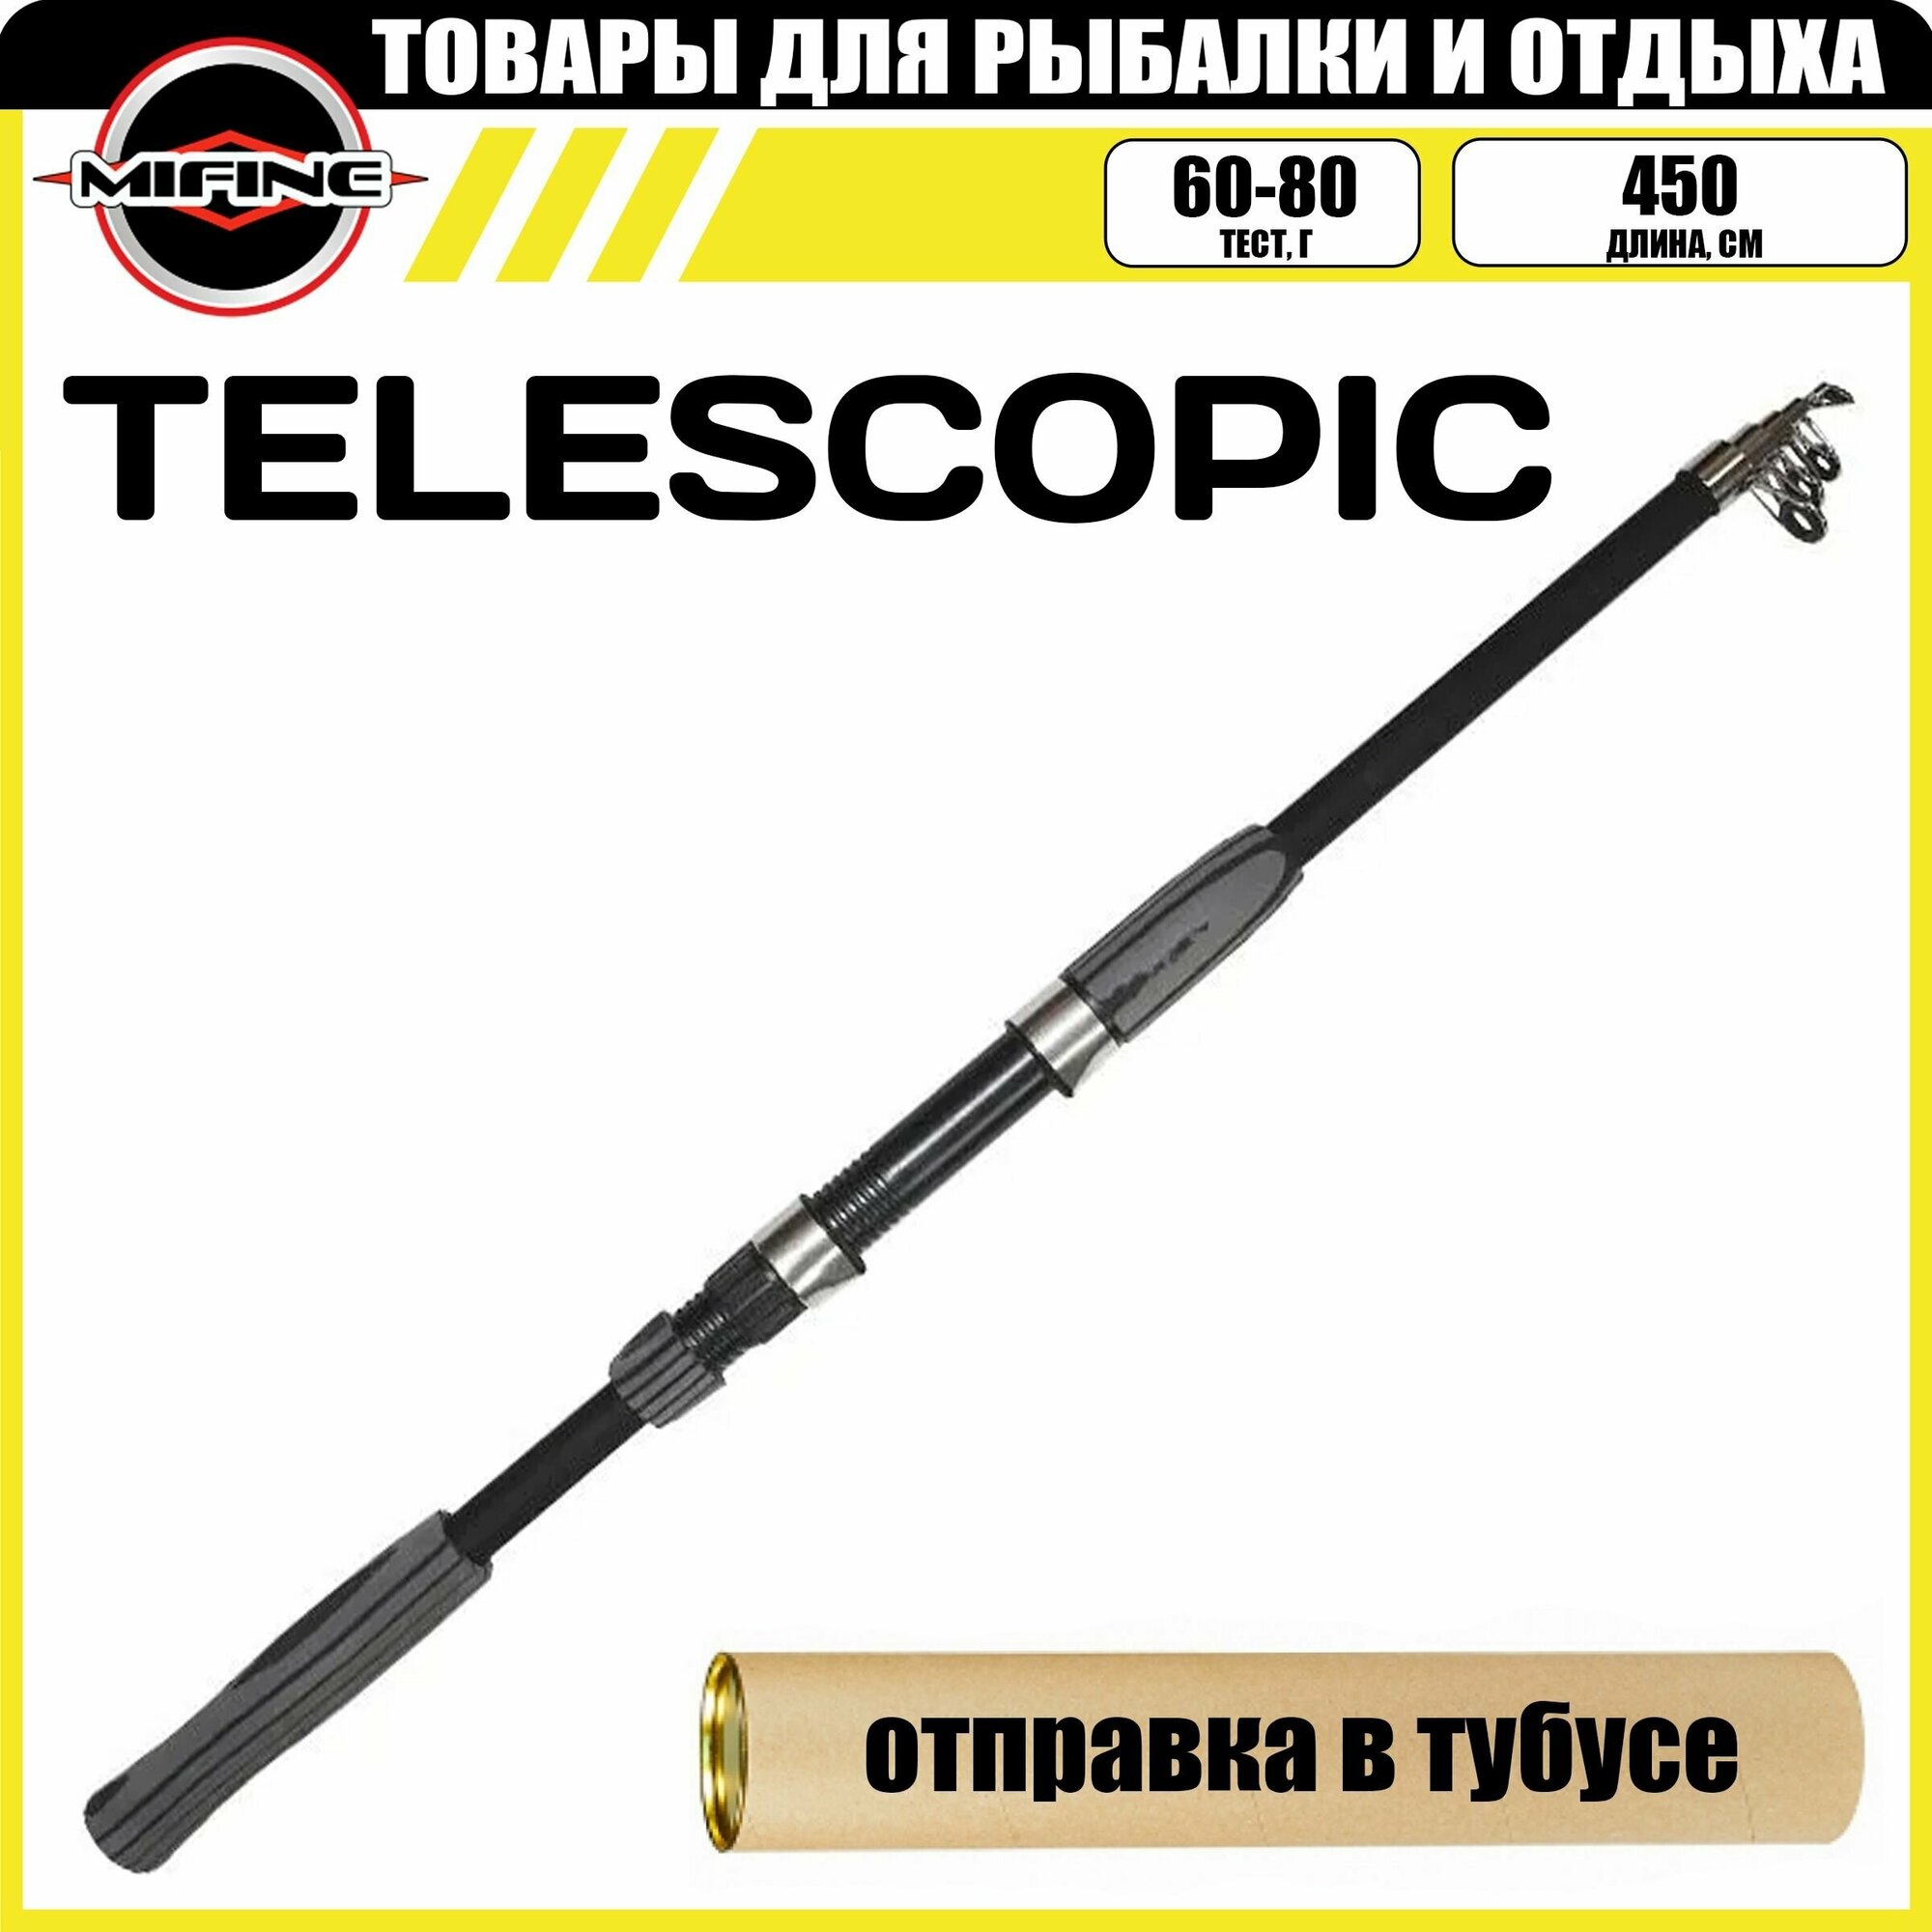 Cпиннинг MIFINE TELESCOPIC телескопический 4.5м (60-80гр), рыболовный, удилище для рыбалки